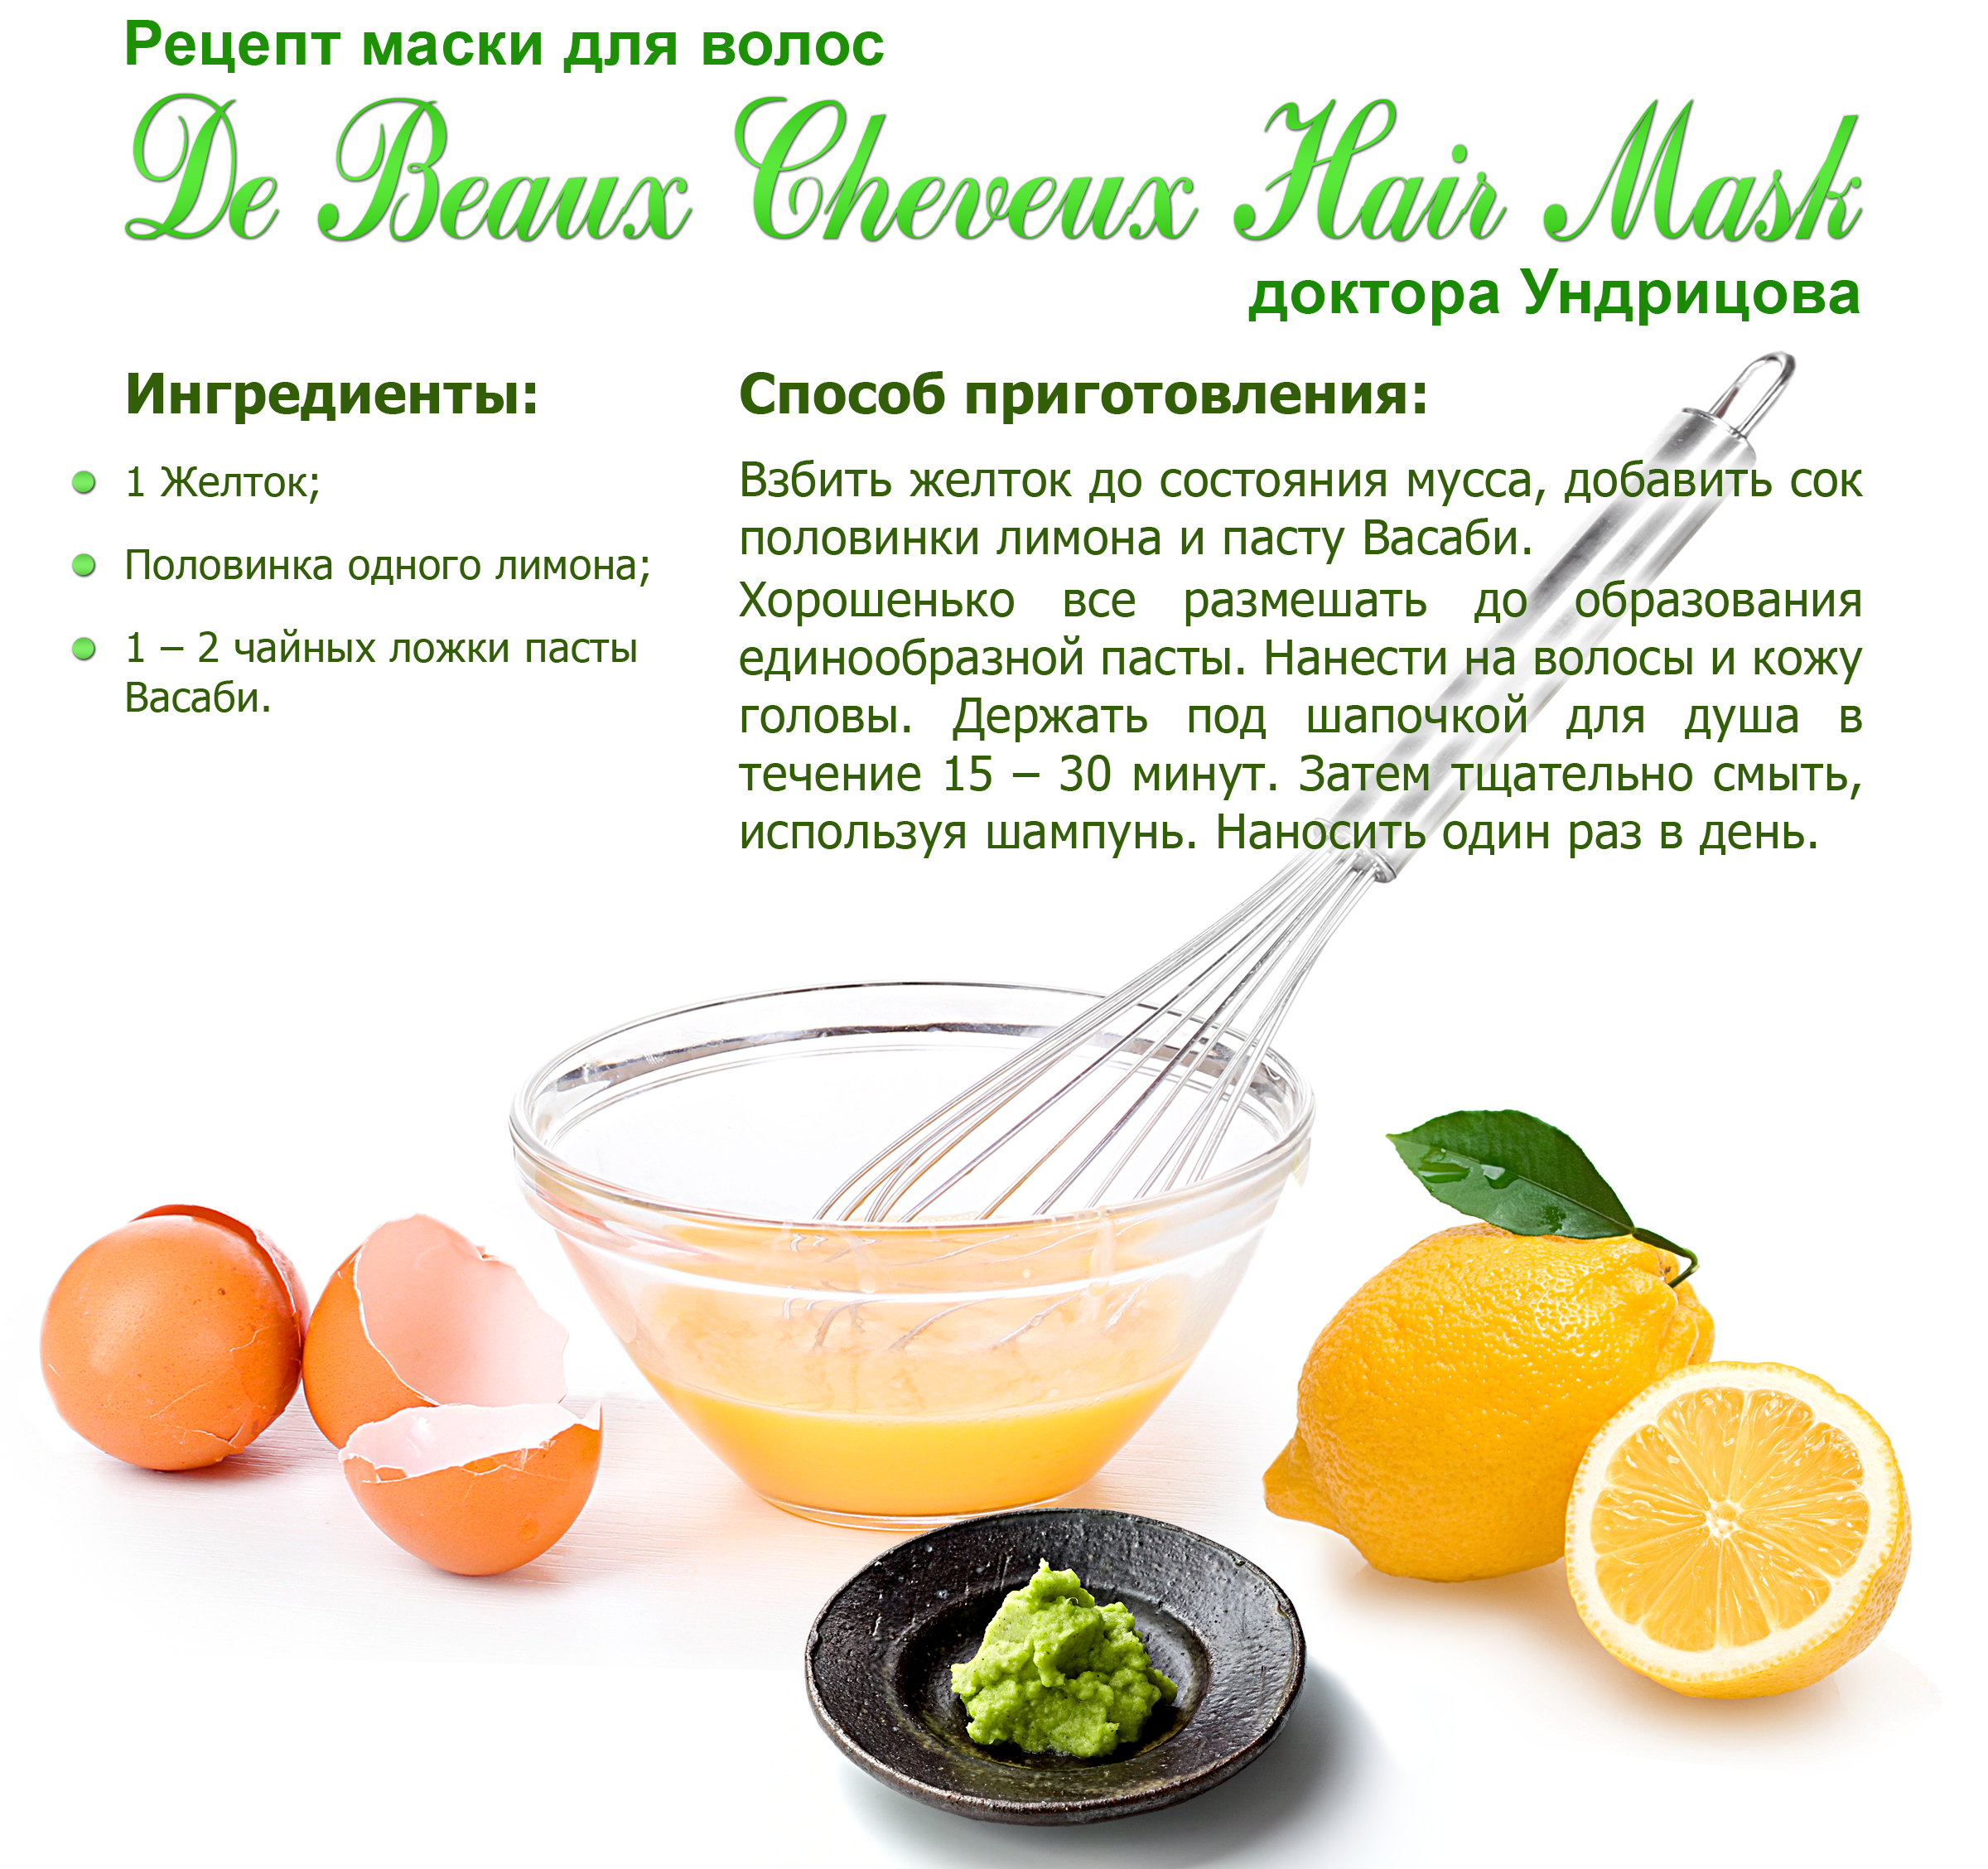 Луковая маска для волос - рецепты приготовления, эффективность применения при выпадении и росте волос